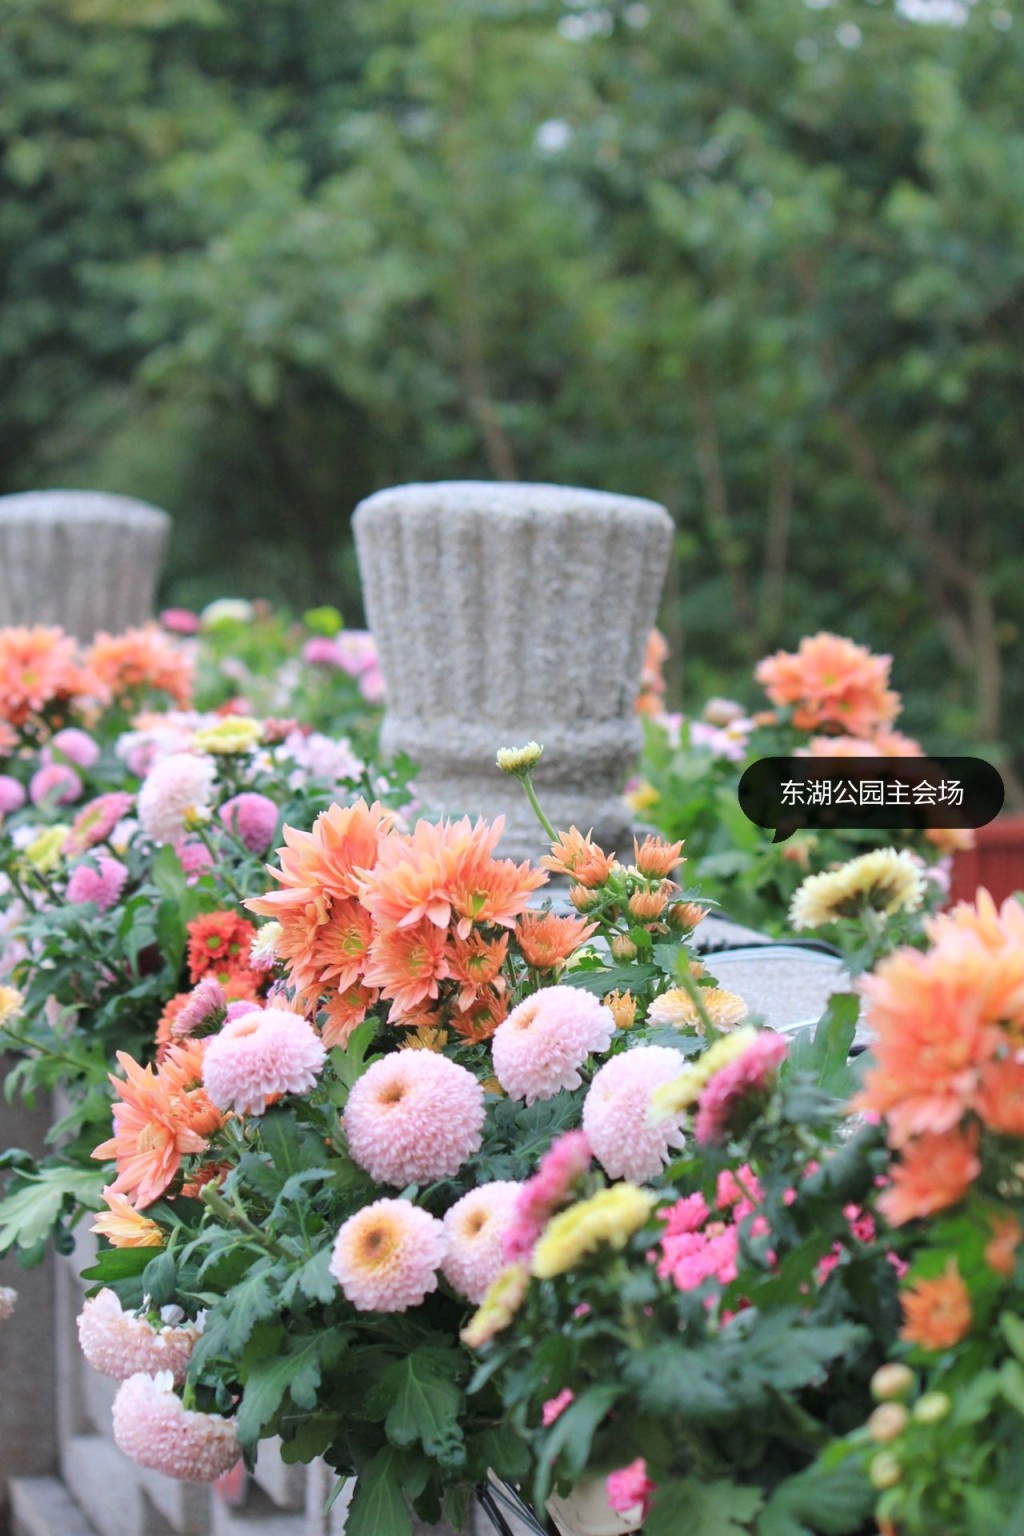 主會場羅湖區東湖公園主要展示精品菊藝。（圖：Lizbeth＠小紅書）